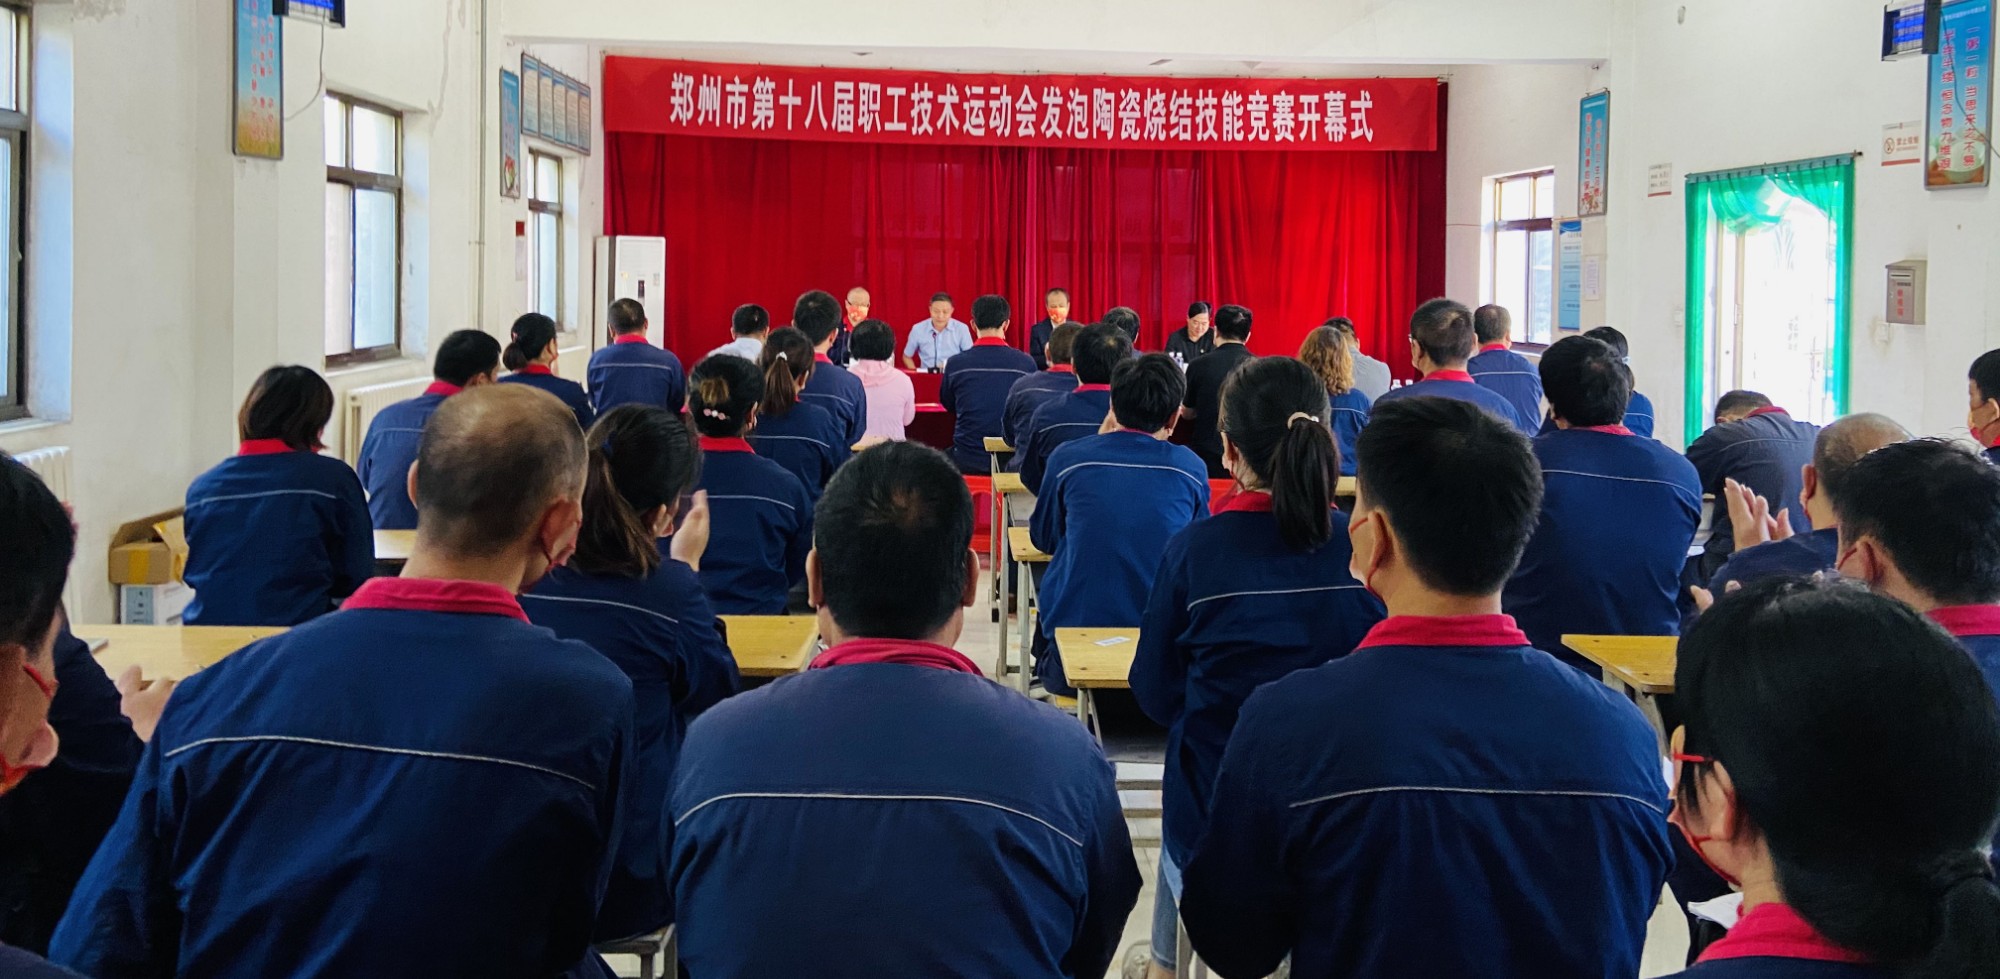 郑州市第十八届职工技术运动会发泡陶瓷烧结技能竞赛在我集团成功举办